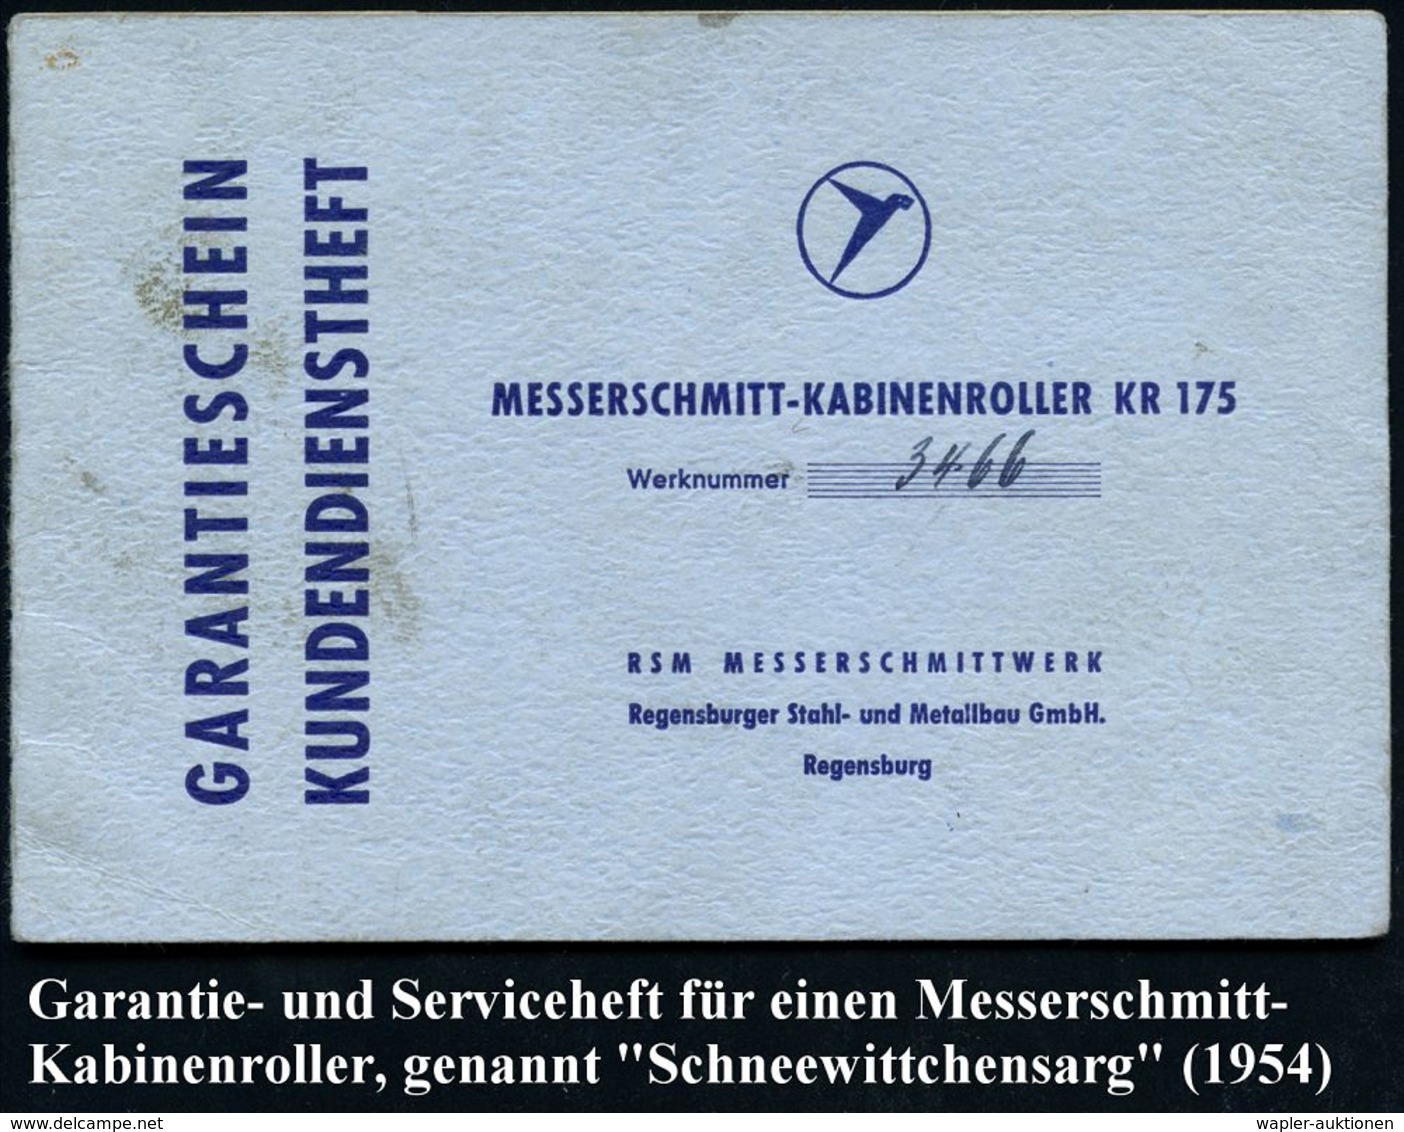 Berlin 1954/58 Messerschmitt Kabinenroller KR 175 (genannt "Schneewittchensarg"), Dokumentation von 20 Belegen, dabei Co